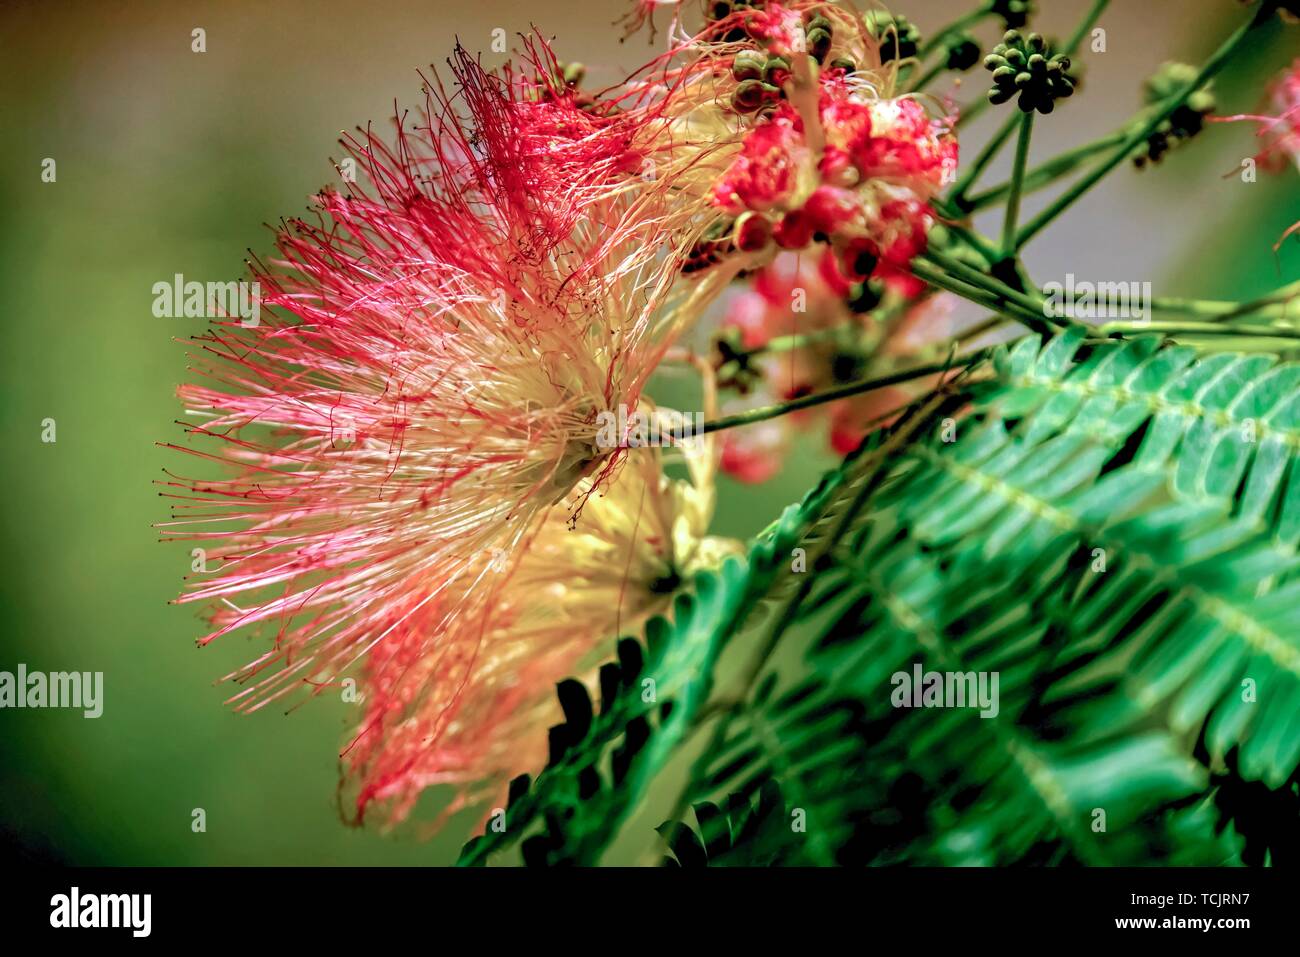 Flowering Calliandra harrisii bush Stock Photo